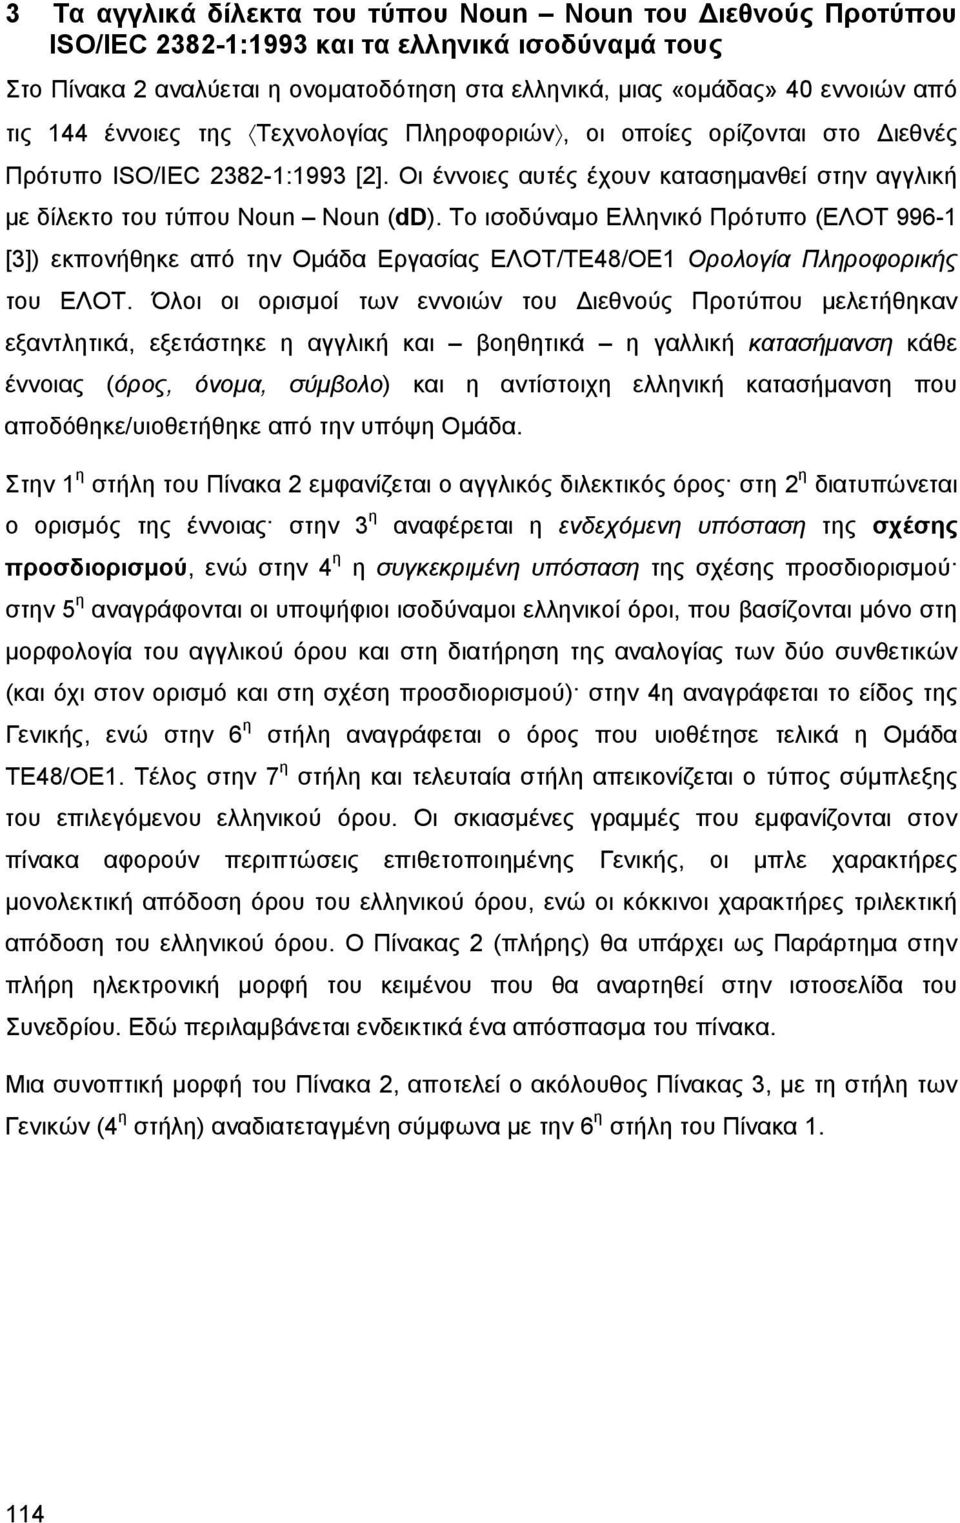 Το ισοδύναμο Ελληνικό Πρότυπο (ΕΛΟΤ 996-1 [3]) εκπονήθηκε από την Ομάδα Εργασίας ΕΛΟΤ/ΤΕ48/ΟΕ1 Ορολογία Πληροφορικής του ΕΛΟΤ.